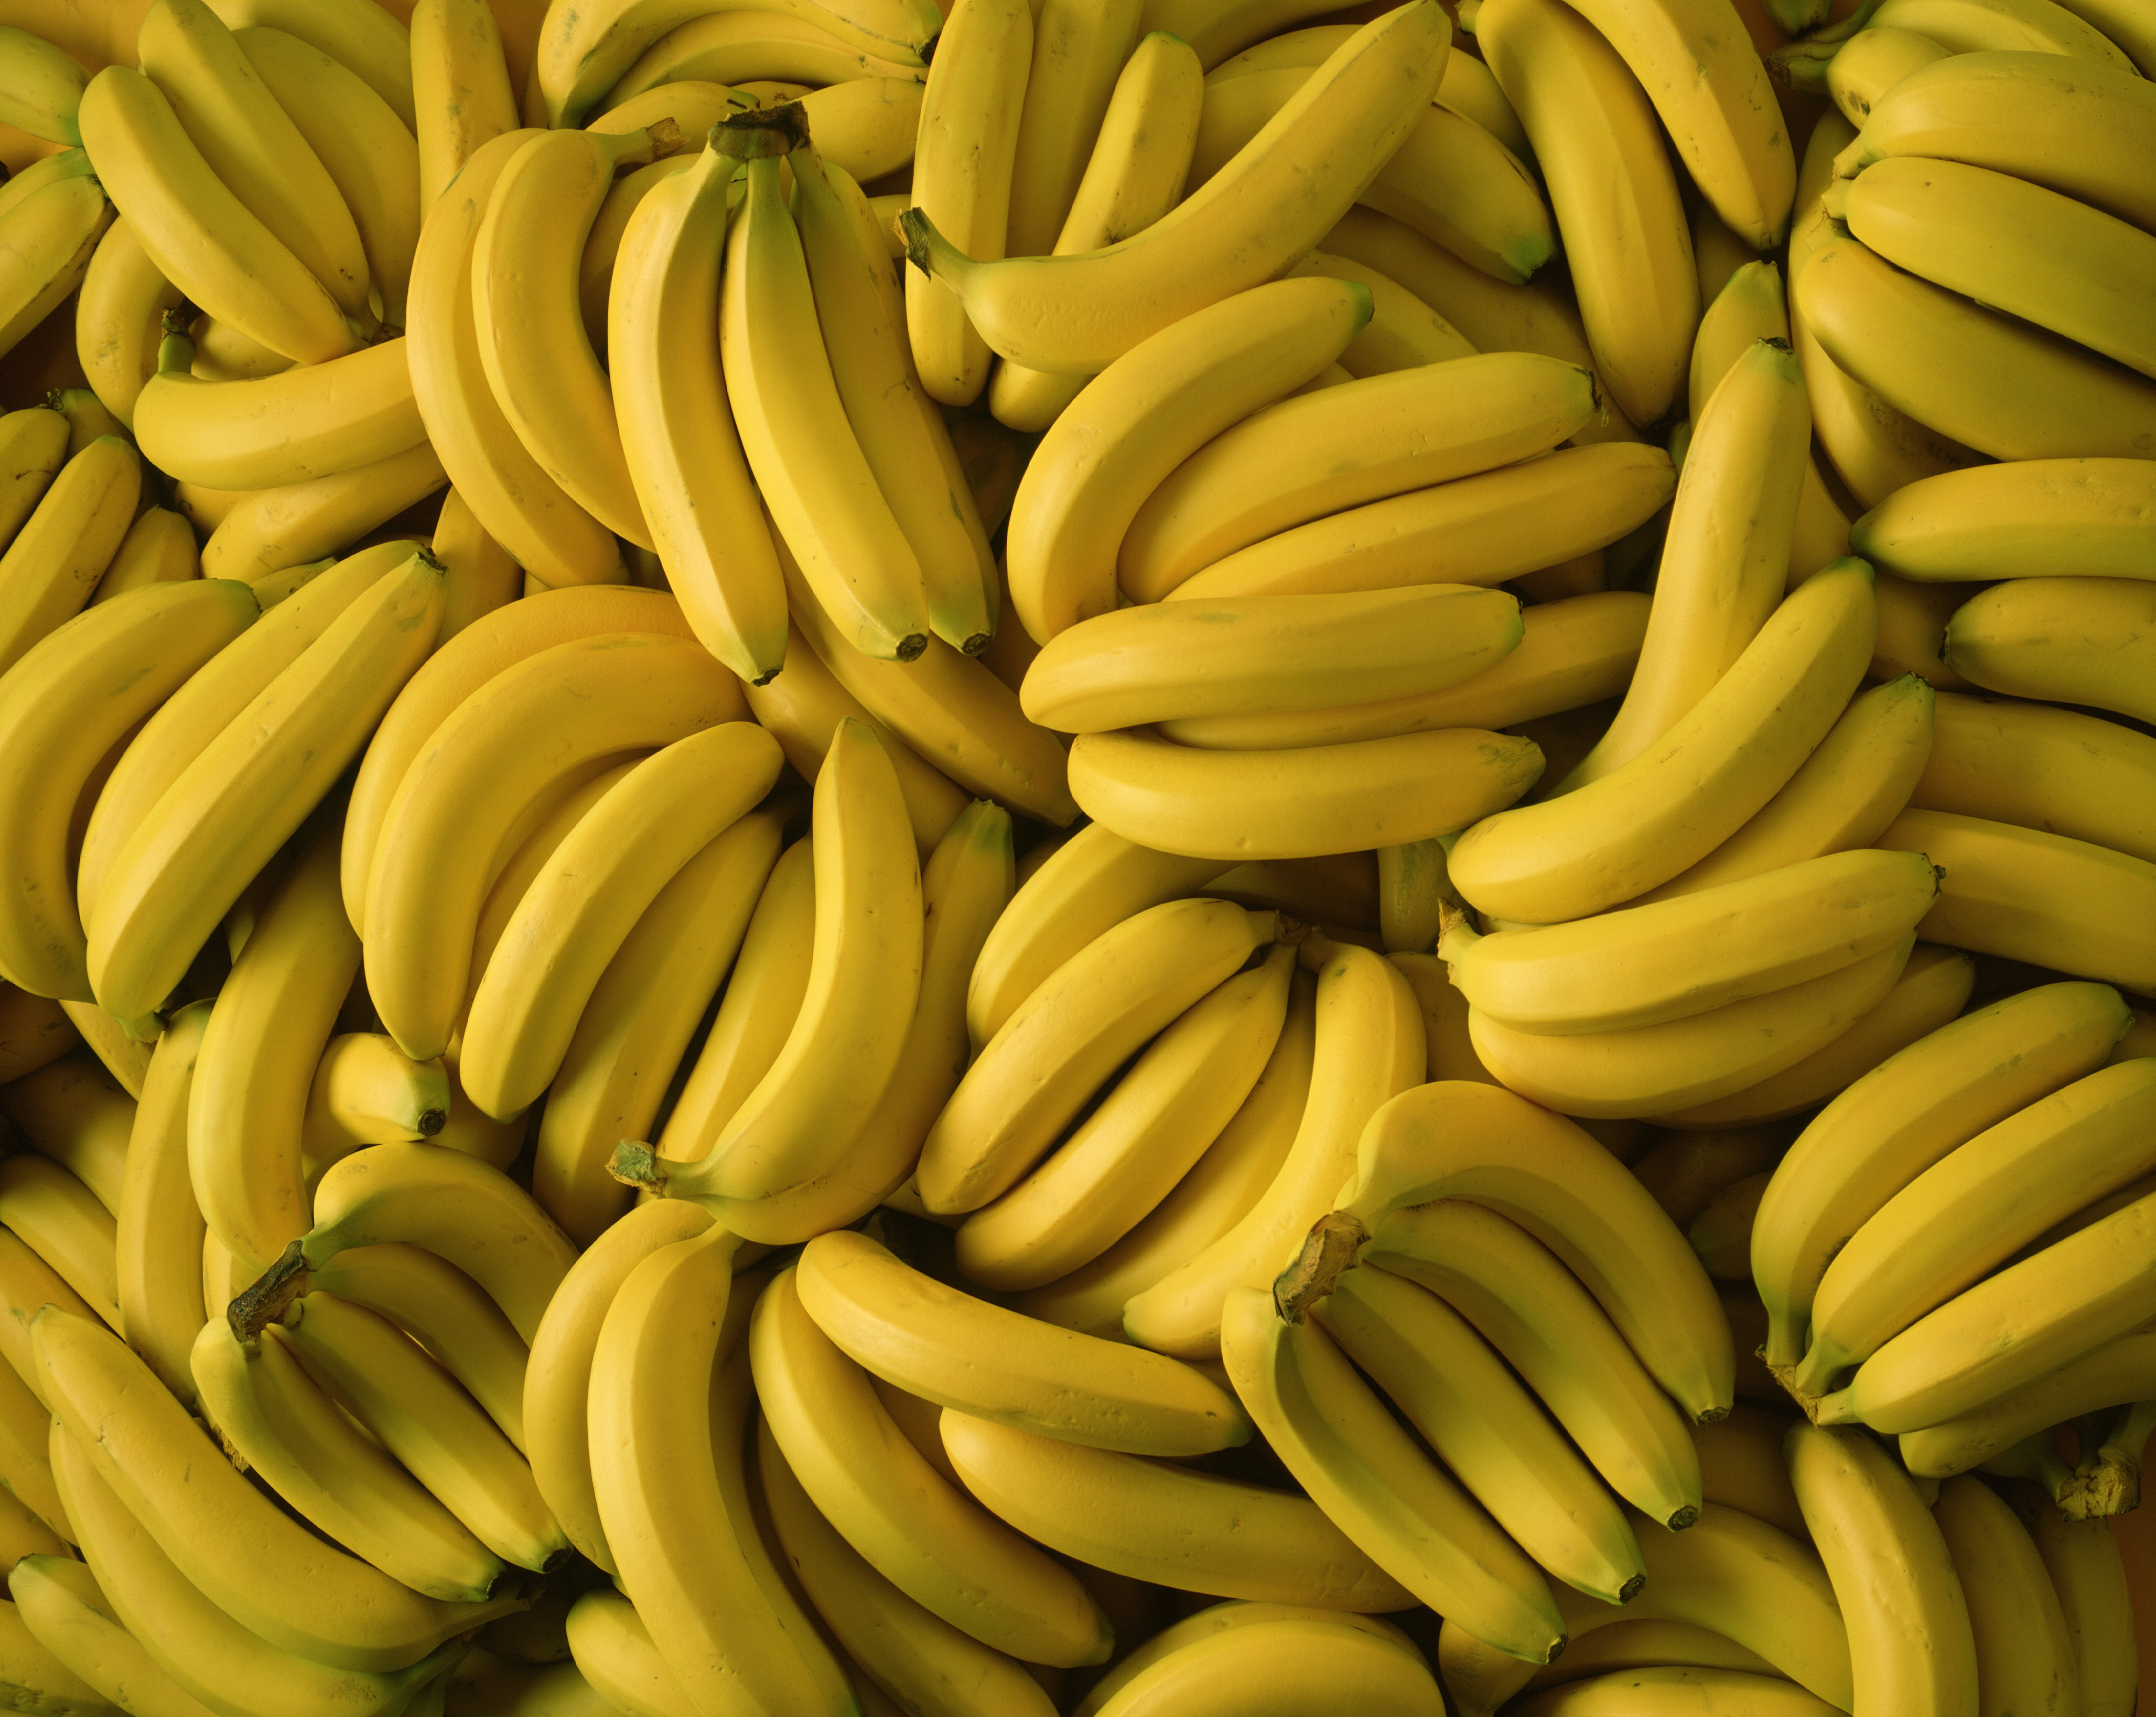 Amazon Free Banana Stands: Jeff Bezos Idea Gives Away Bananas | Money